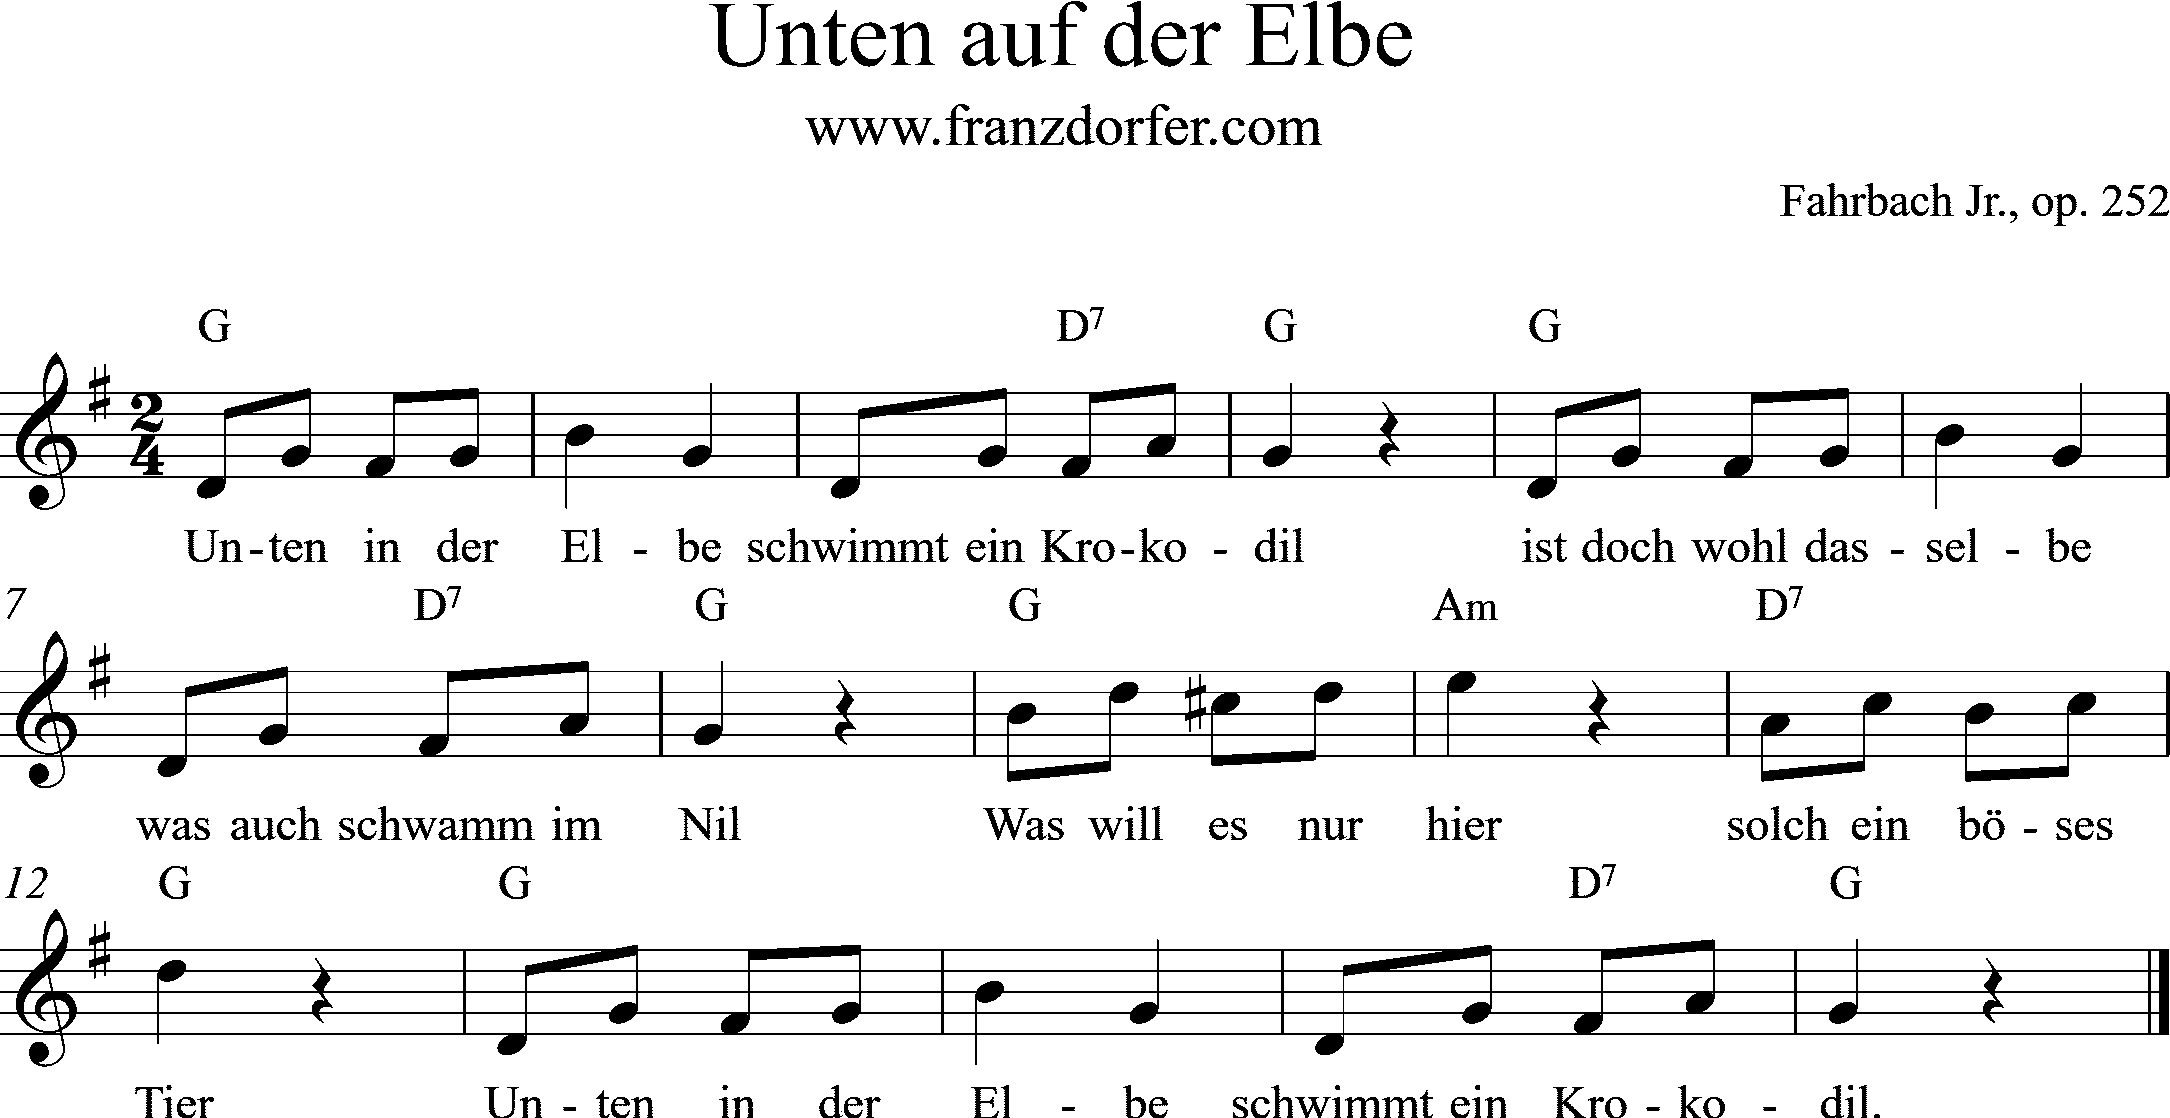 Noten, Unter auf der Elbe, G-Dur, Flotter Studio, Fahrbach